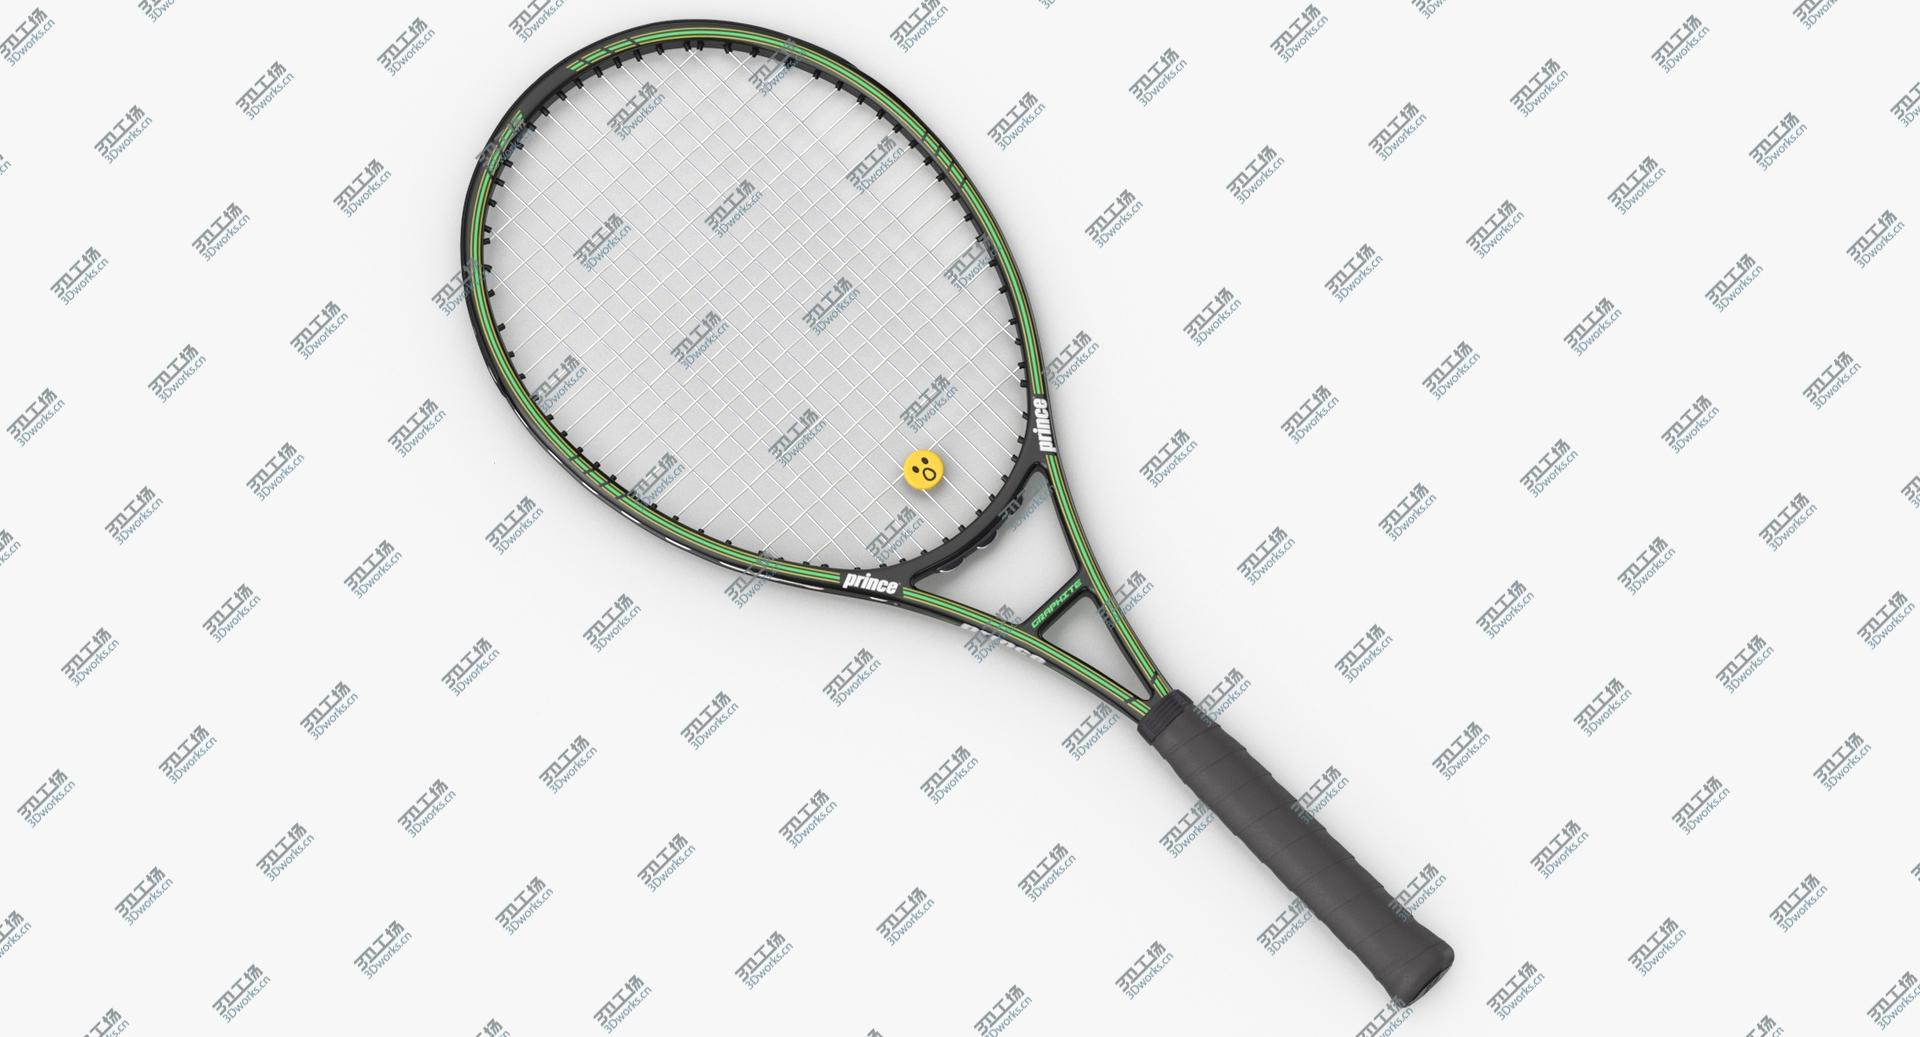 images/goods_img/2021040234/3D Tennis Racket model/1.jpg